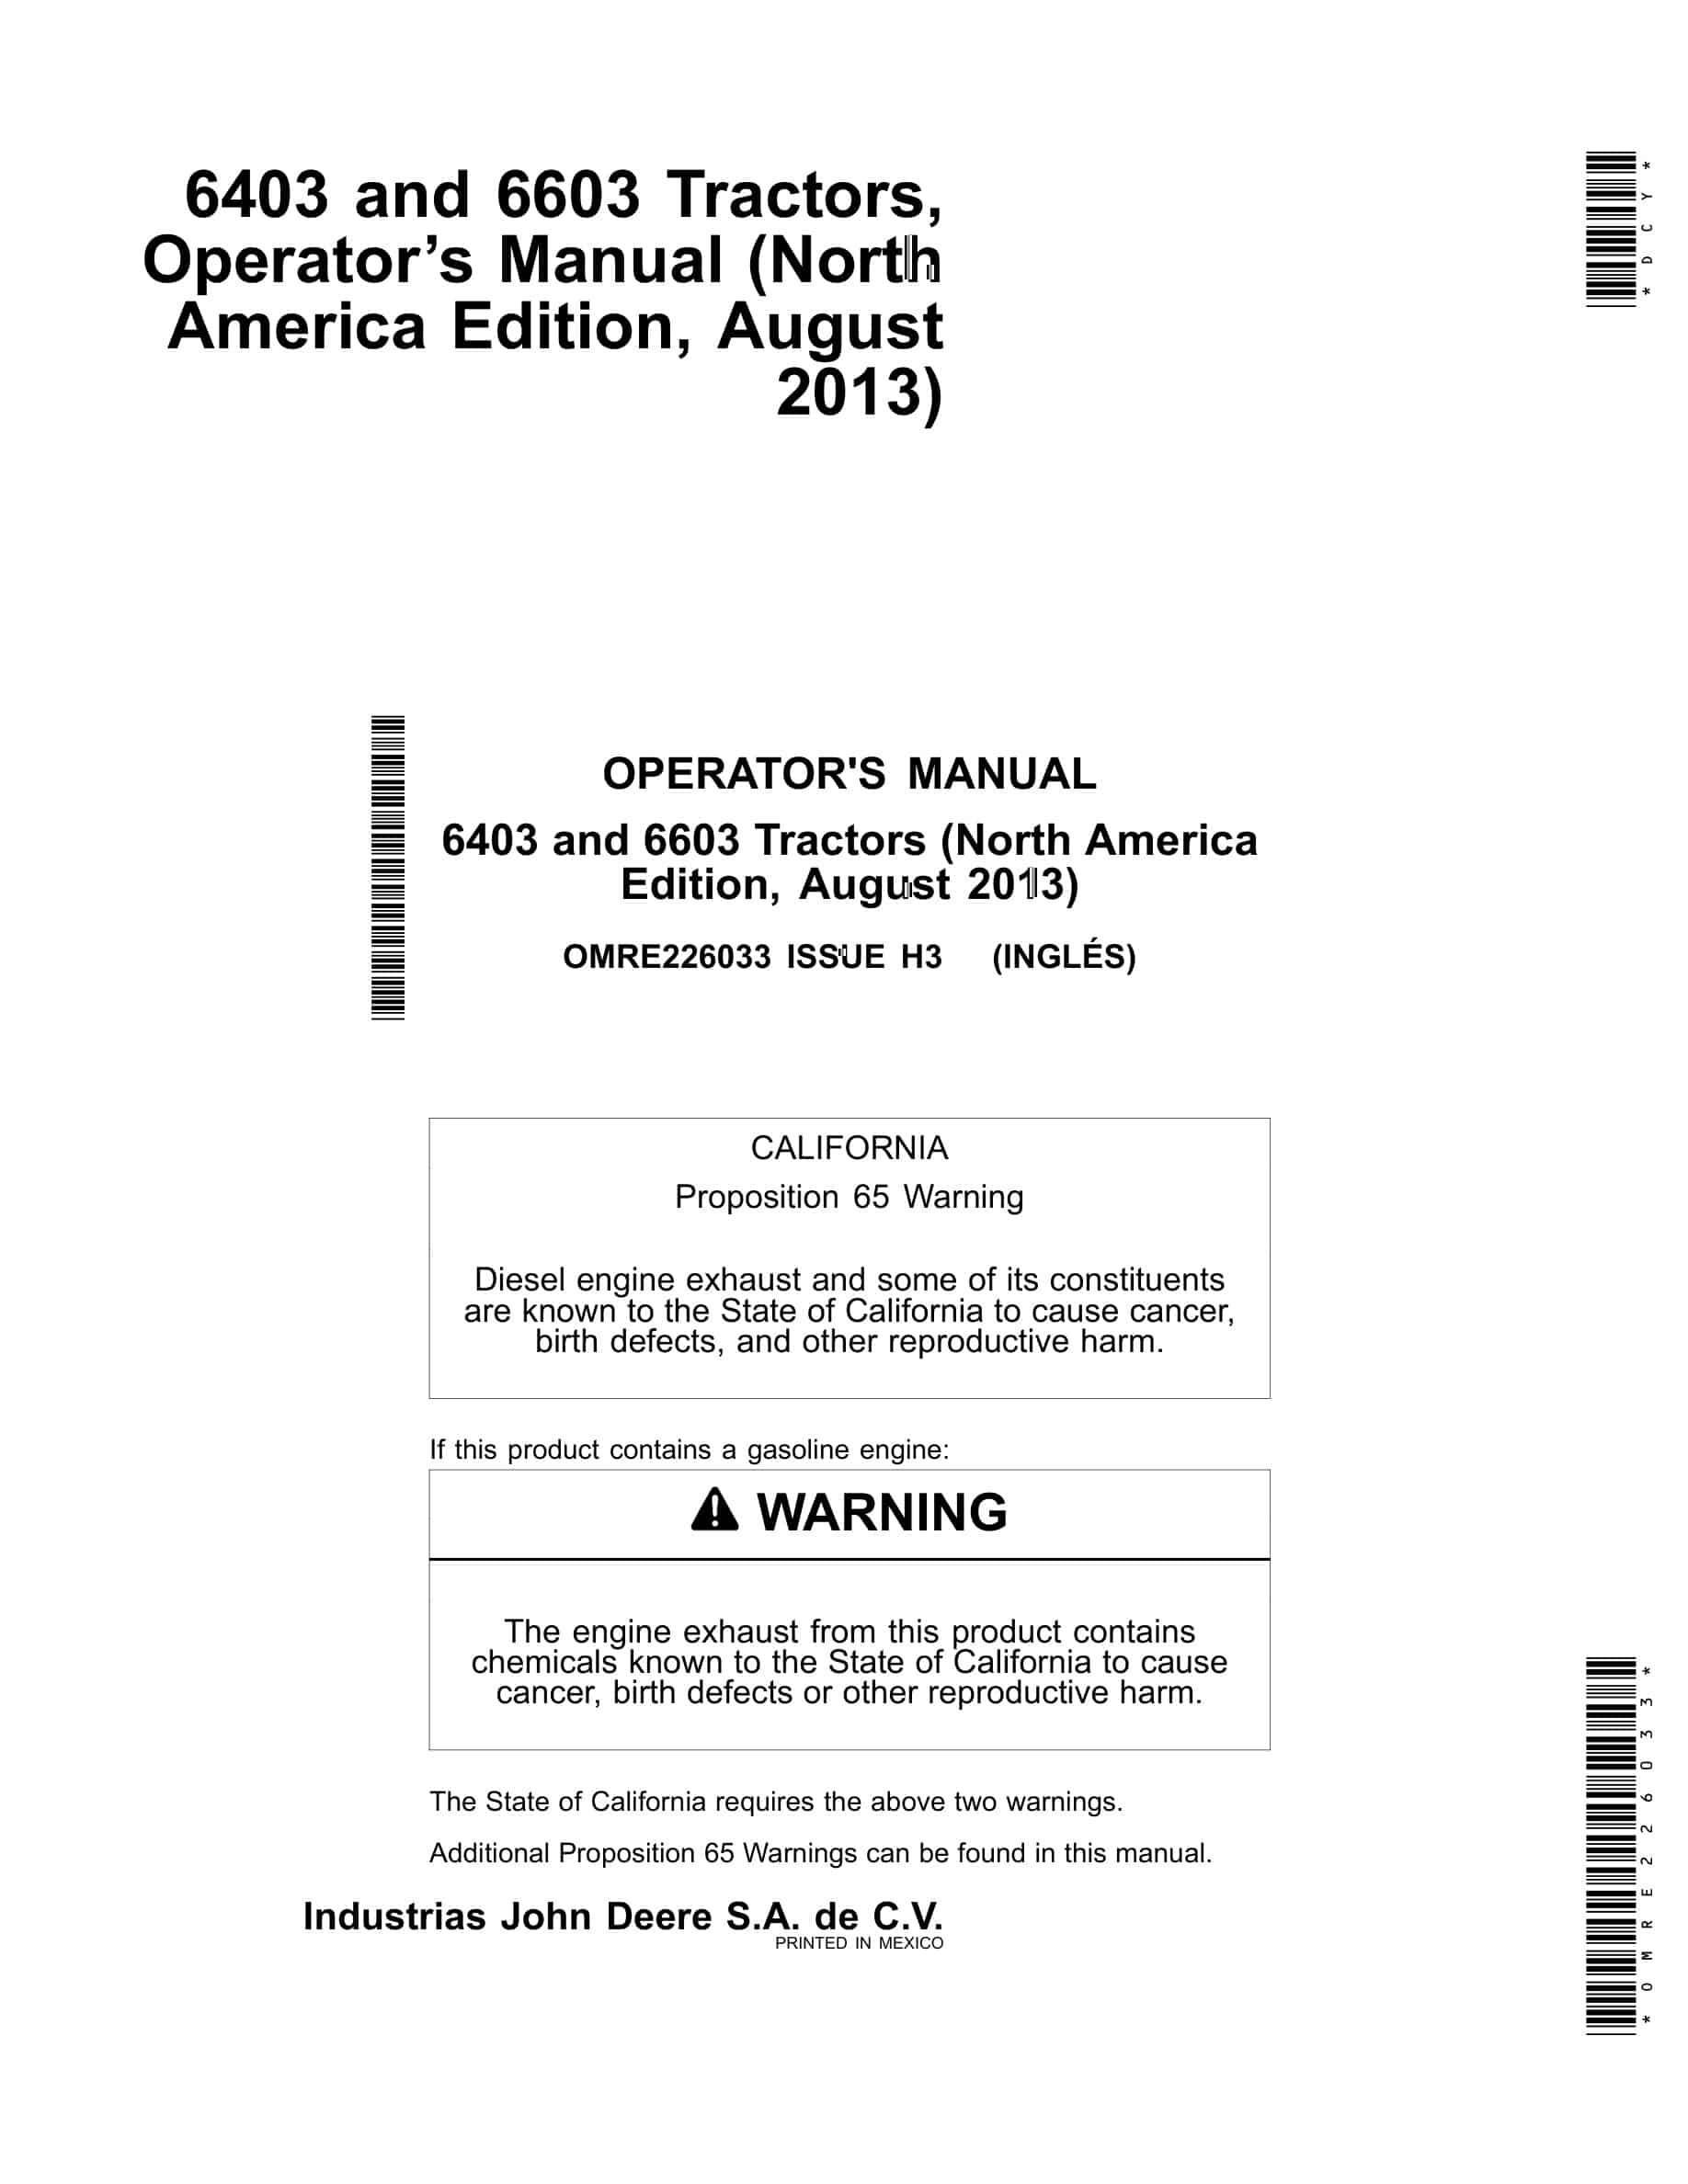 John Deere 6403 and 6603 Tractor Operator Manual OMRE226033-1